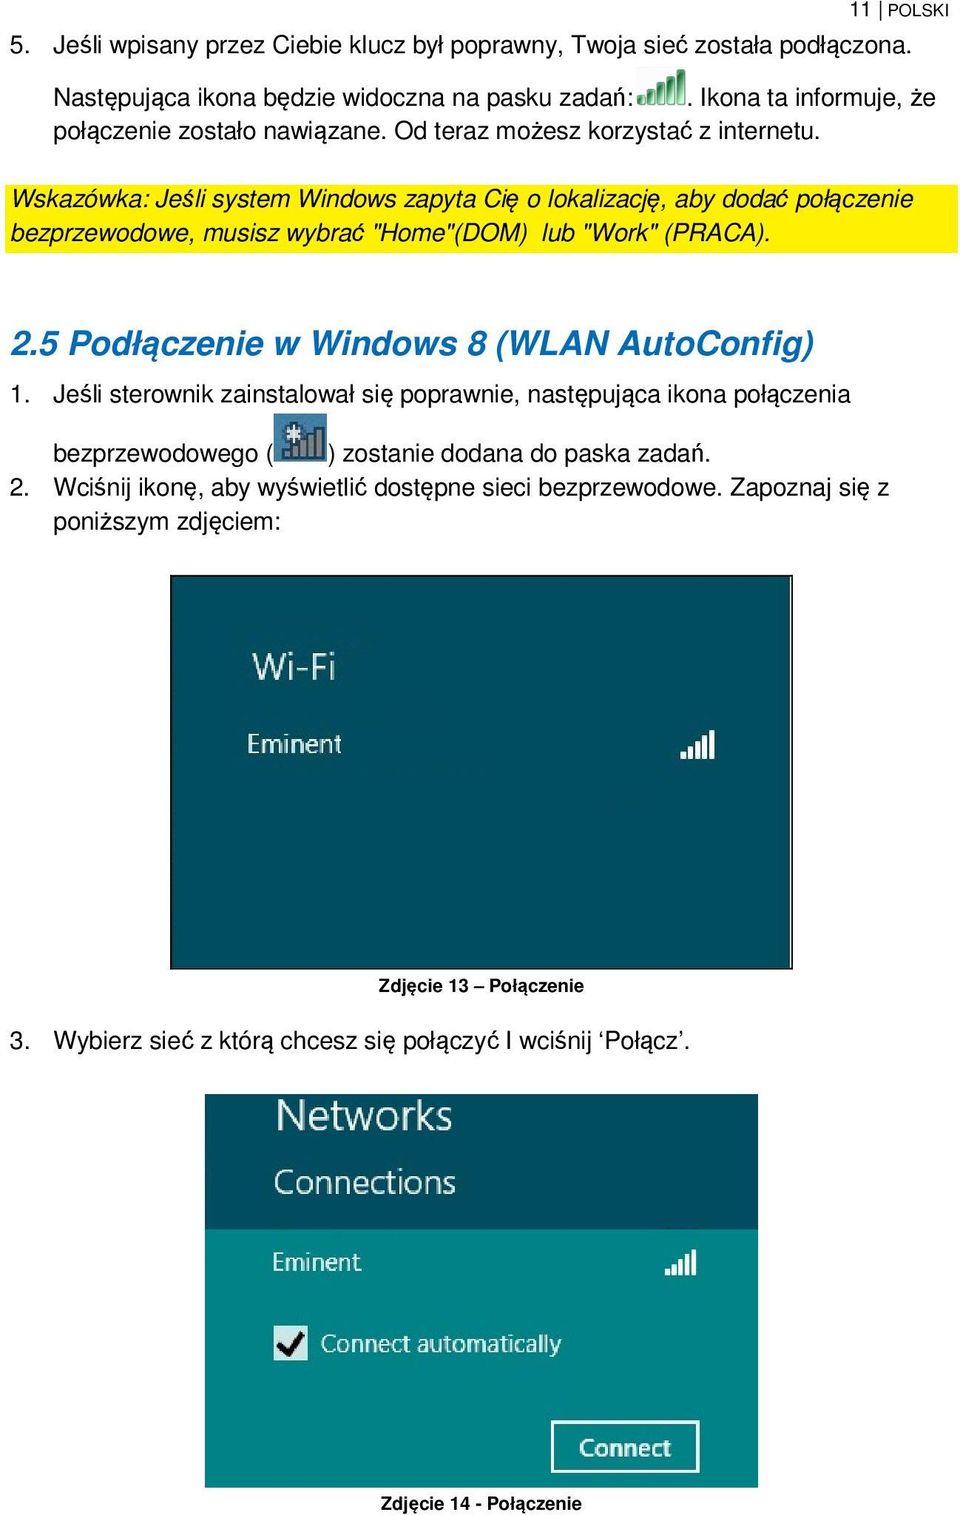 Wskazówka: Jeśli system Windows zapyta Cię o lokalizację, aby dodać połączenie bezprzewodowe, musisz wybrać "Home"(DOM) lub "Work" (PRACA). 2.5 Podłączenie w Windows 8 (WLAN AutoConfig) 1.